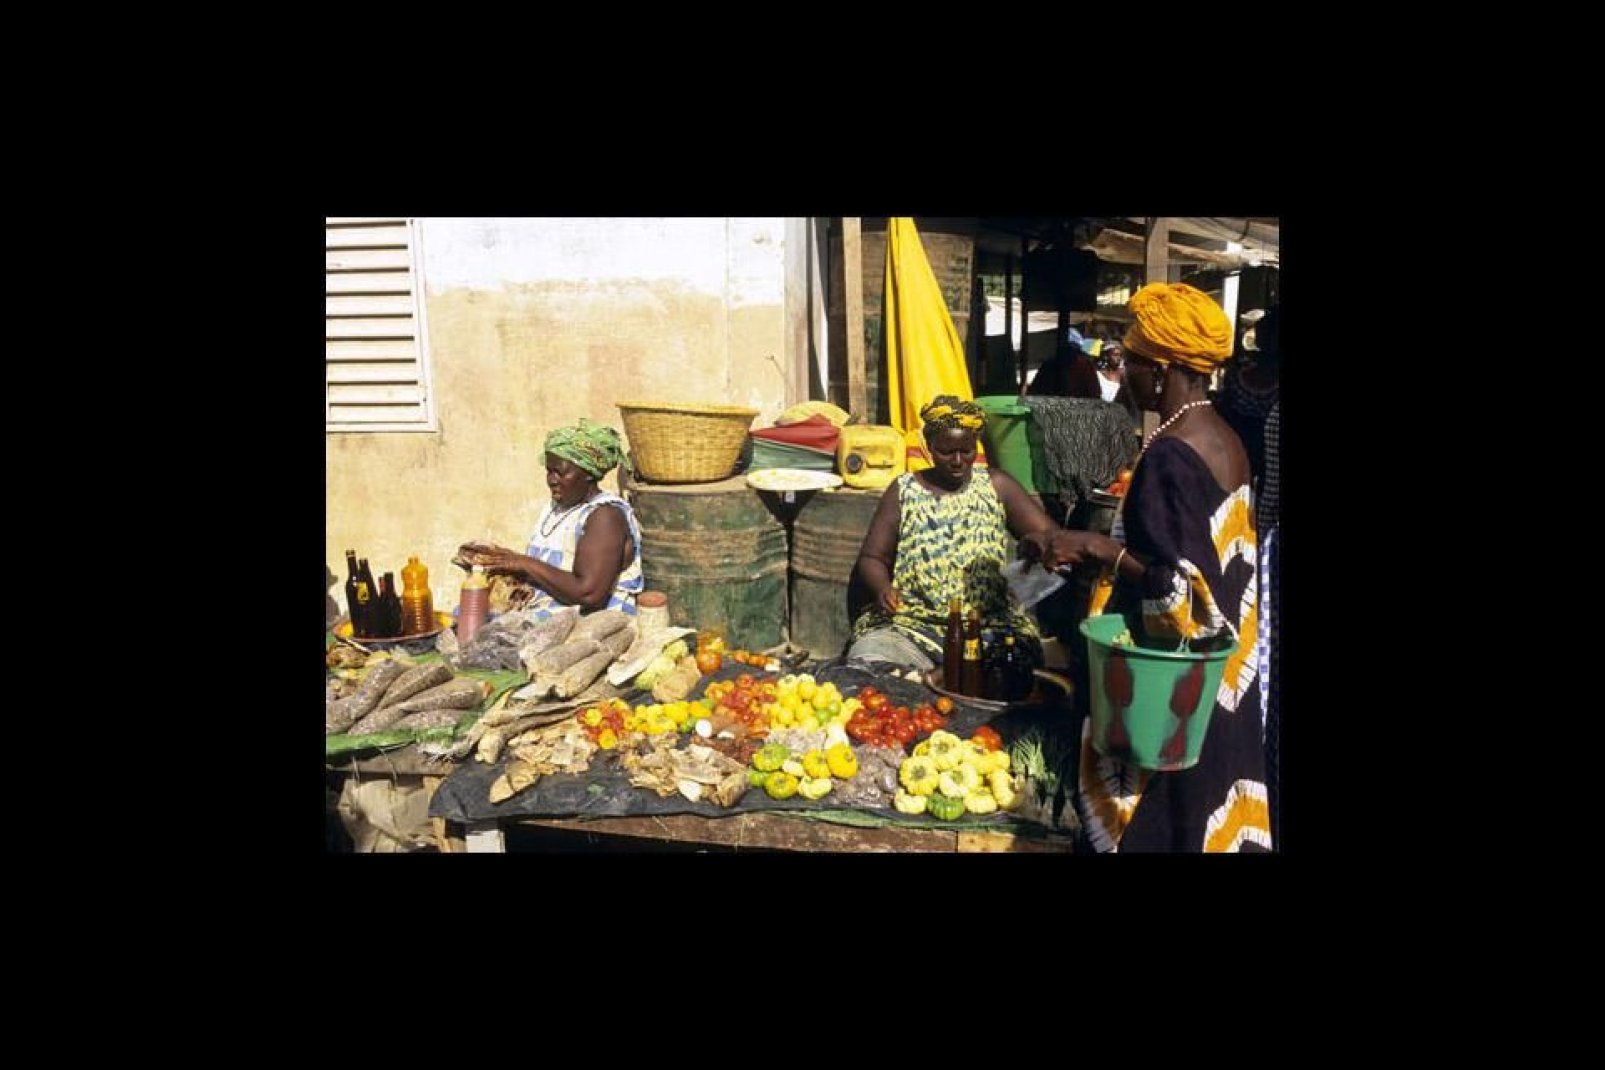 Il mercato di Ziguinchor propone una grande varietà di frutta e verdura, nonché gamberi essiccati, miele ed olio di palma